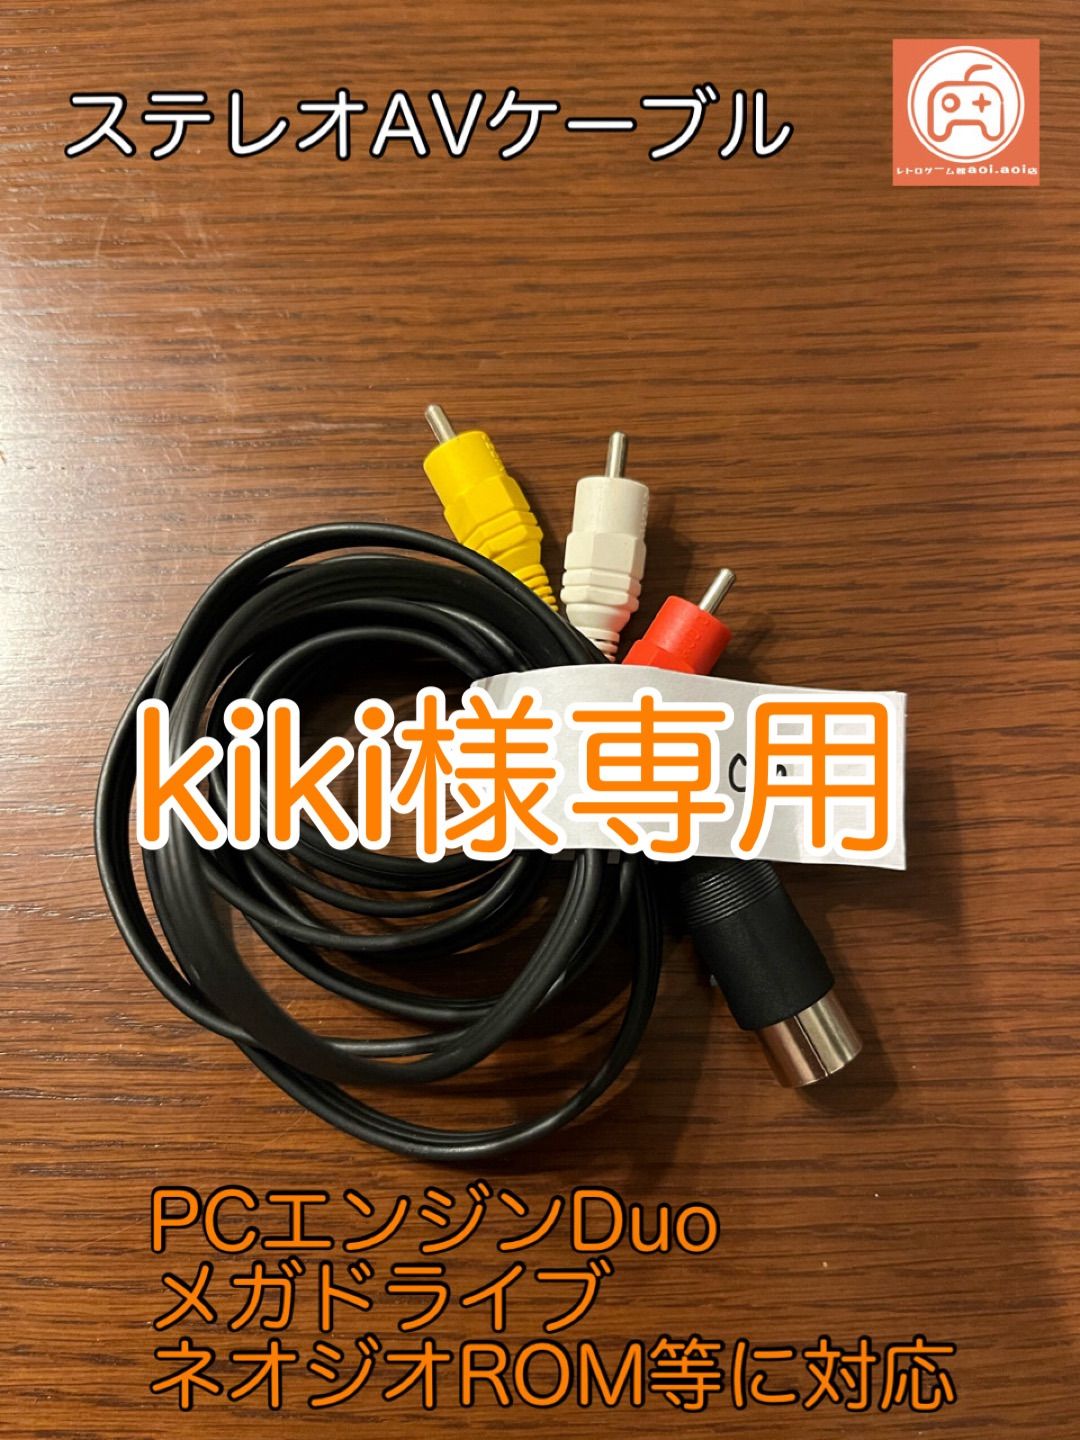 kiki様専用 自作 汎用AVケーブル(PCエンジンDuo,メガドライブ,ネオジオ